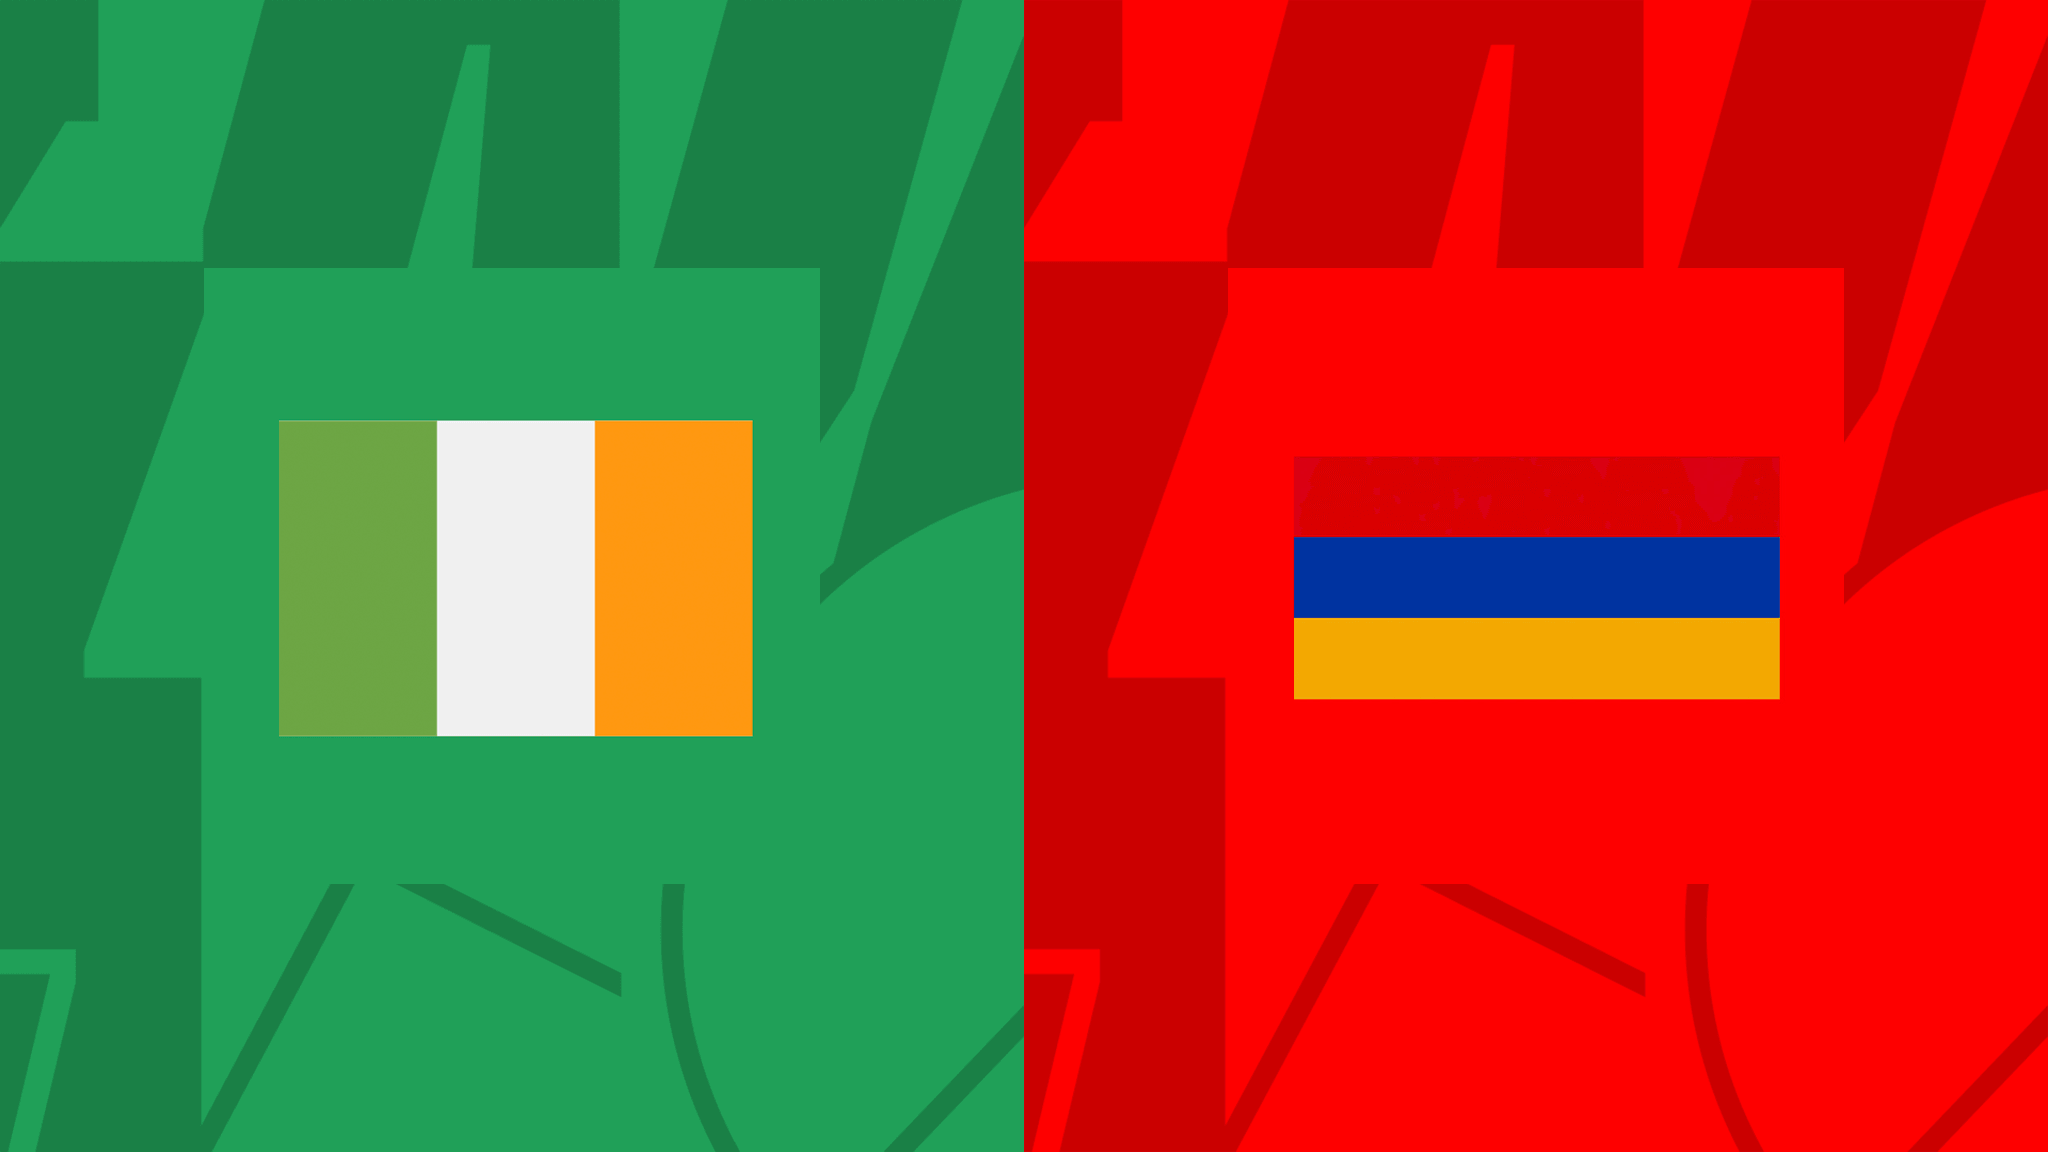 مباراة ايرلندا ضد أرمينيا فى دوري الأمم الأوروبية والقنوات الناقلة Ireland vs Armenia